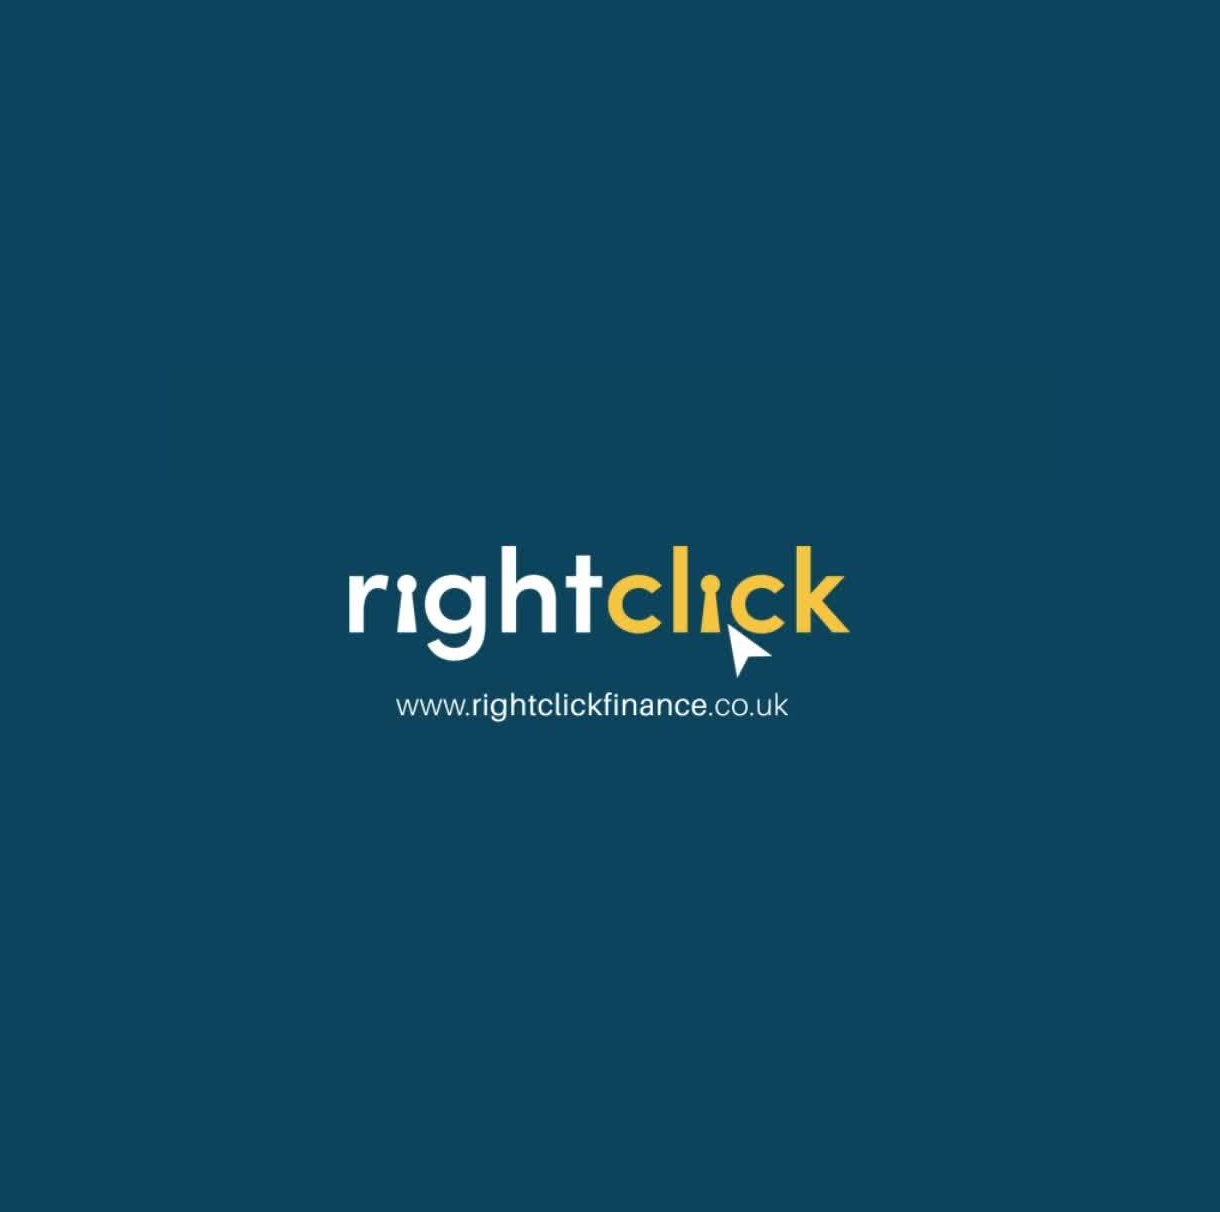 Right Click Media company